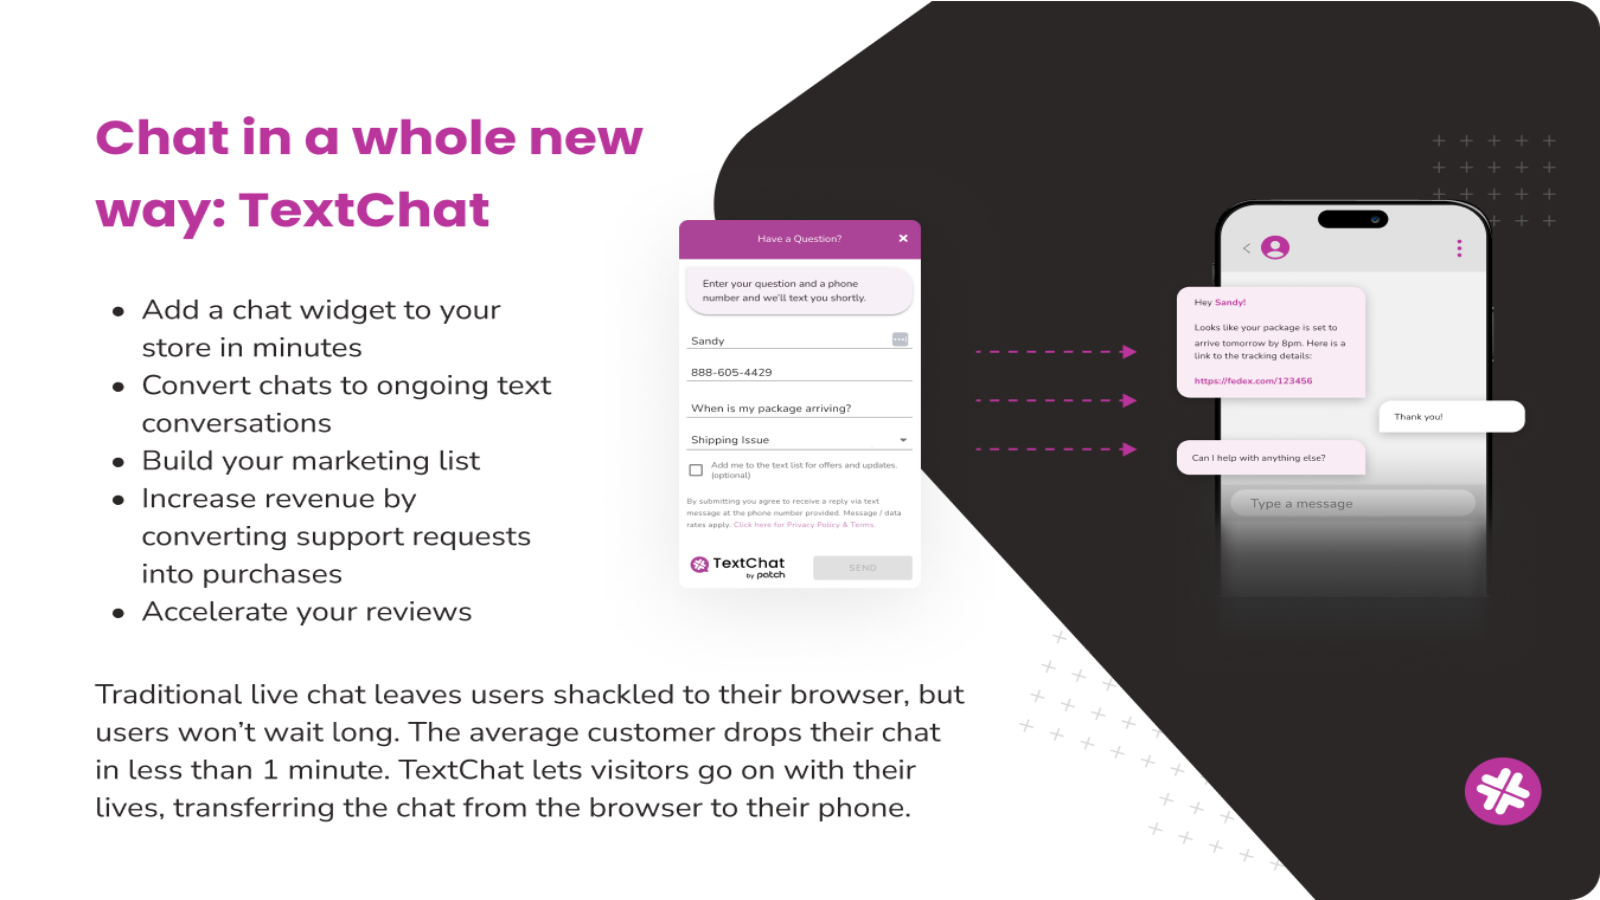 ¡TextChat transfiere el chat web directamente al teléfono de tus clientes!